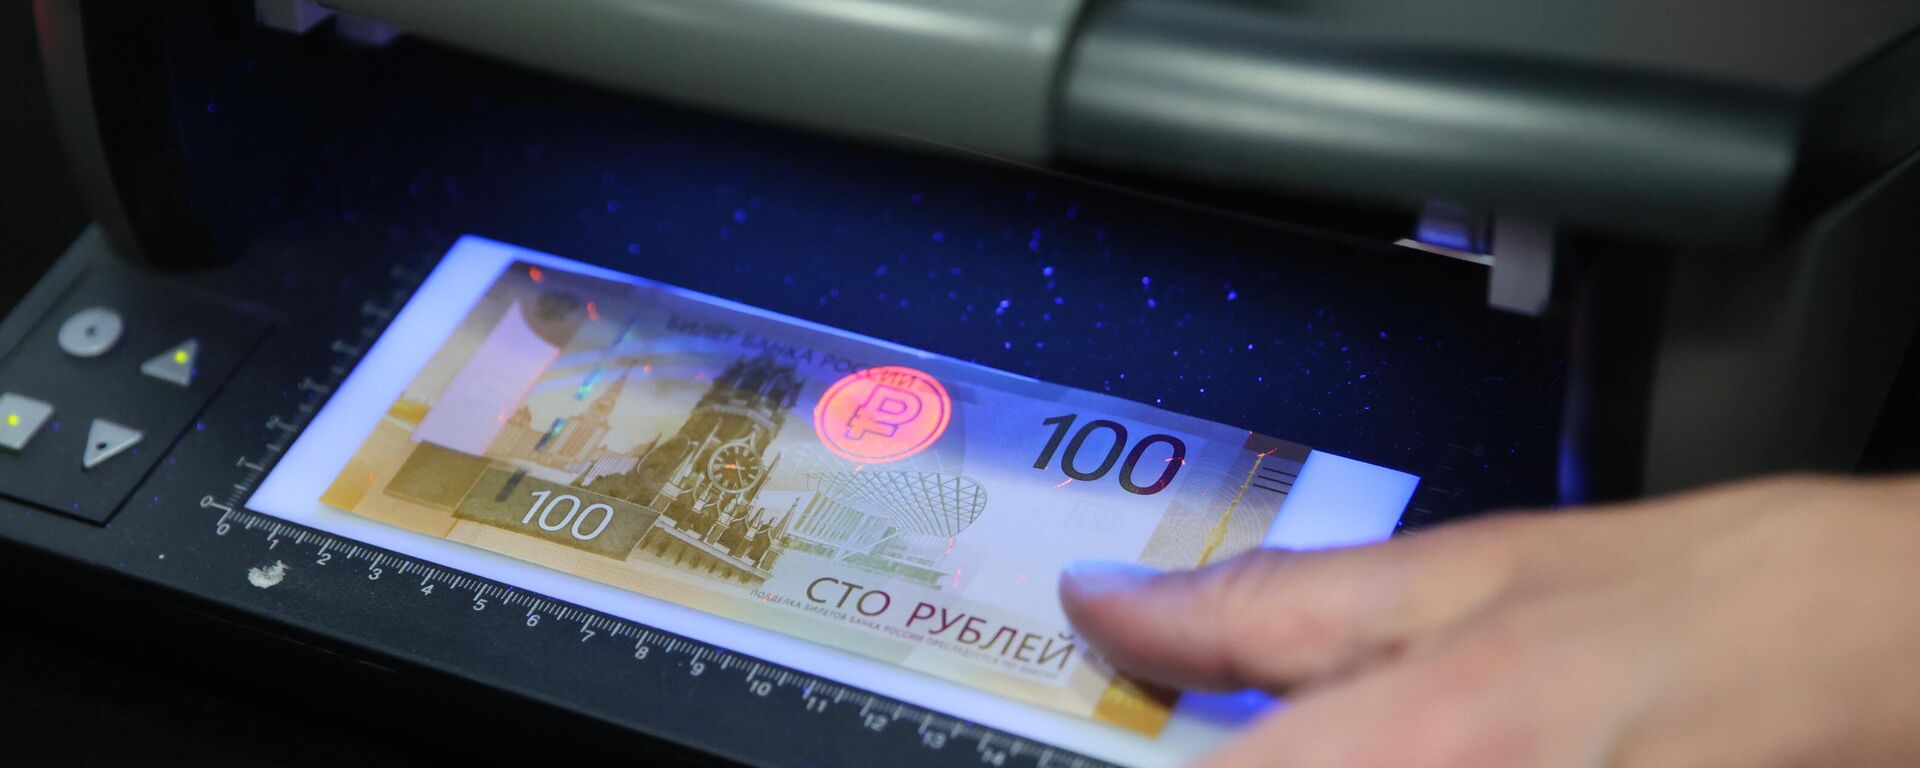 Nova nota de 100 rublos é exibida durante coletiva de imprensa em Moscou, na Rússia - Sputnik Brasil, 1920, 28.12.2023